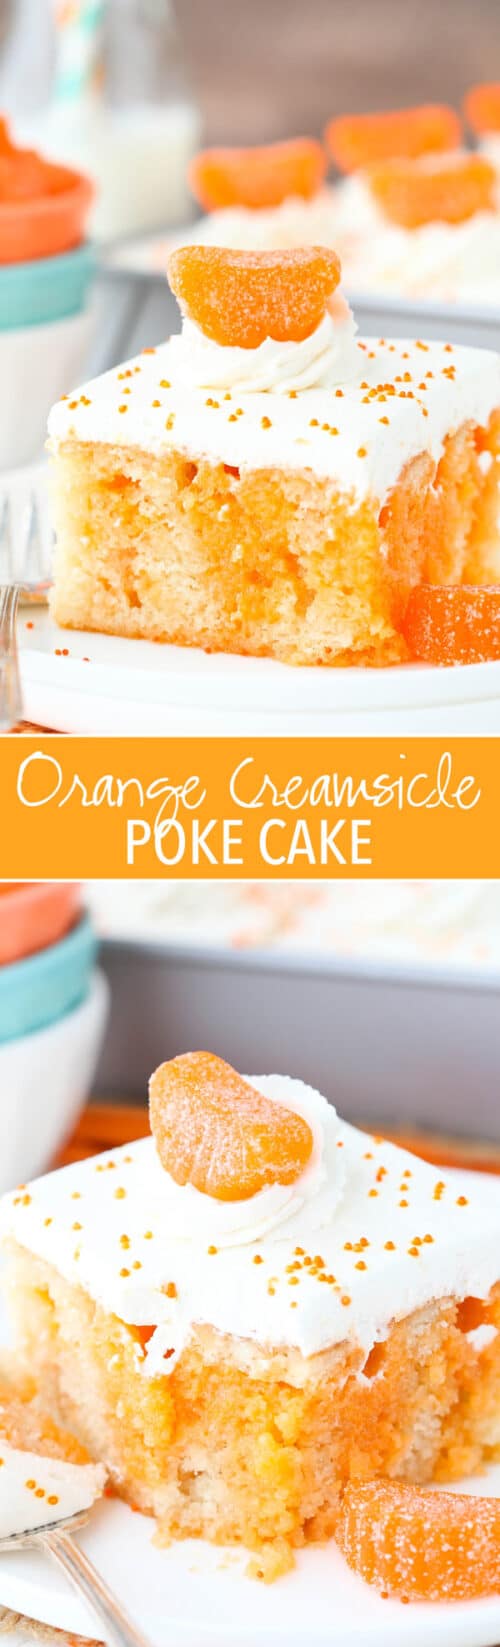 Orange Creamsicle Poke Cake | The Best Orange Cake Recipe